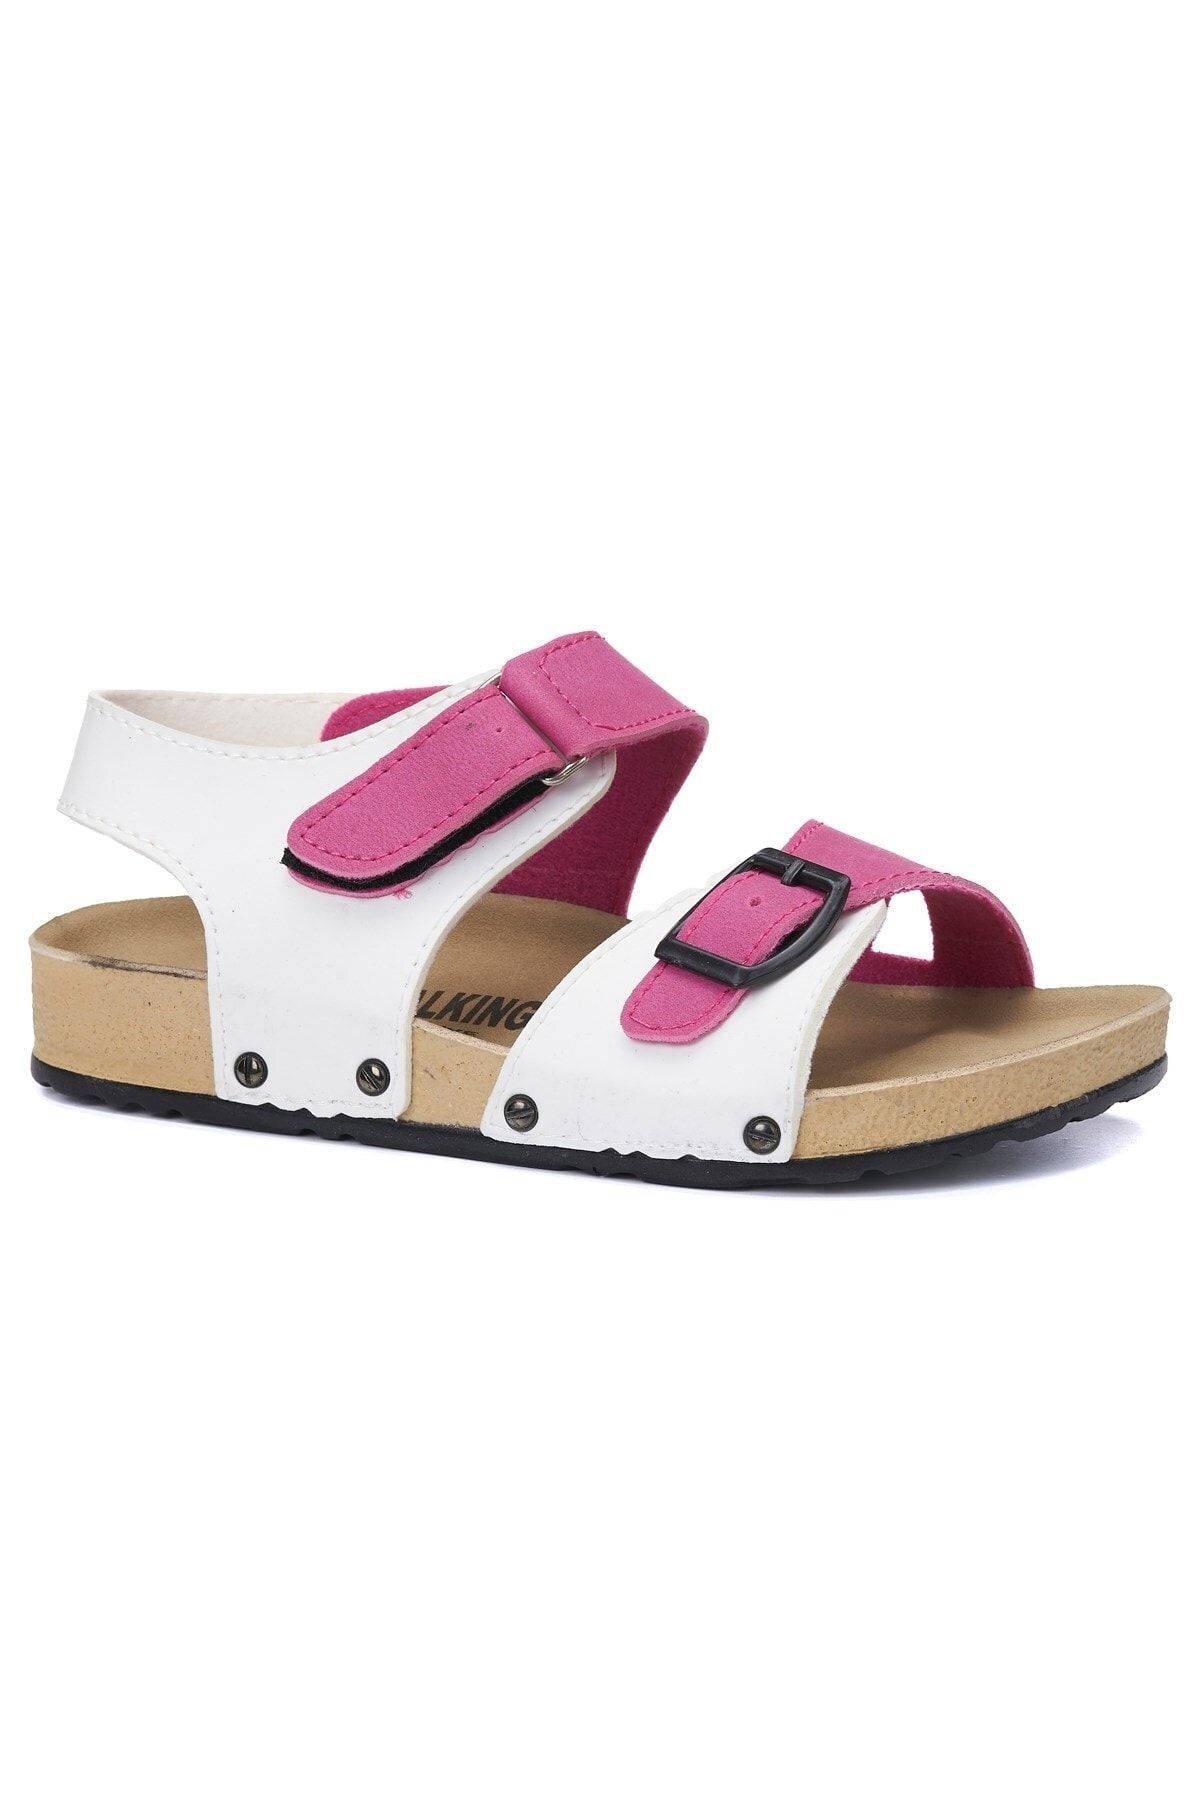 İmerShoes Günlük Çift Renk Unisex Çocuk Sandalet Cırtlı Tokalı Rahat Mantar Taban Terlik 187